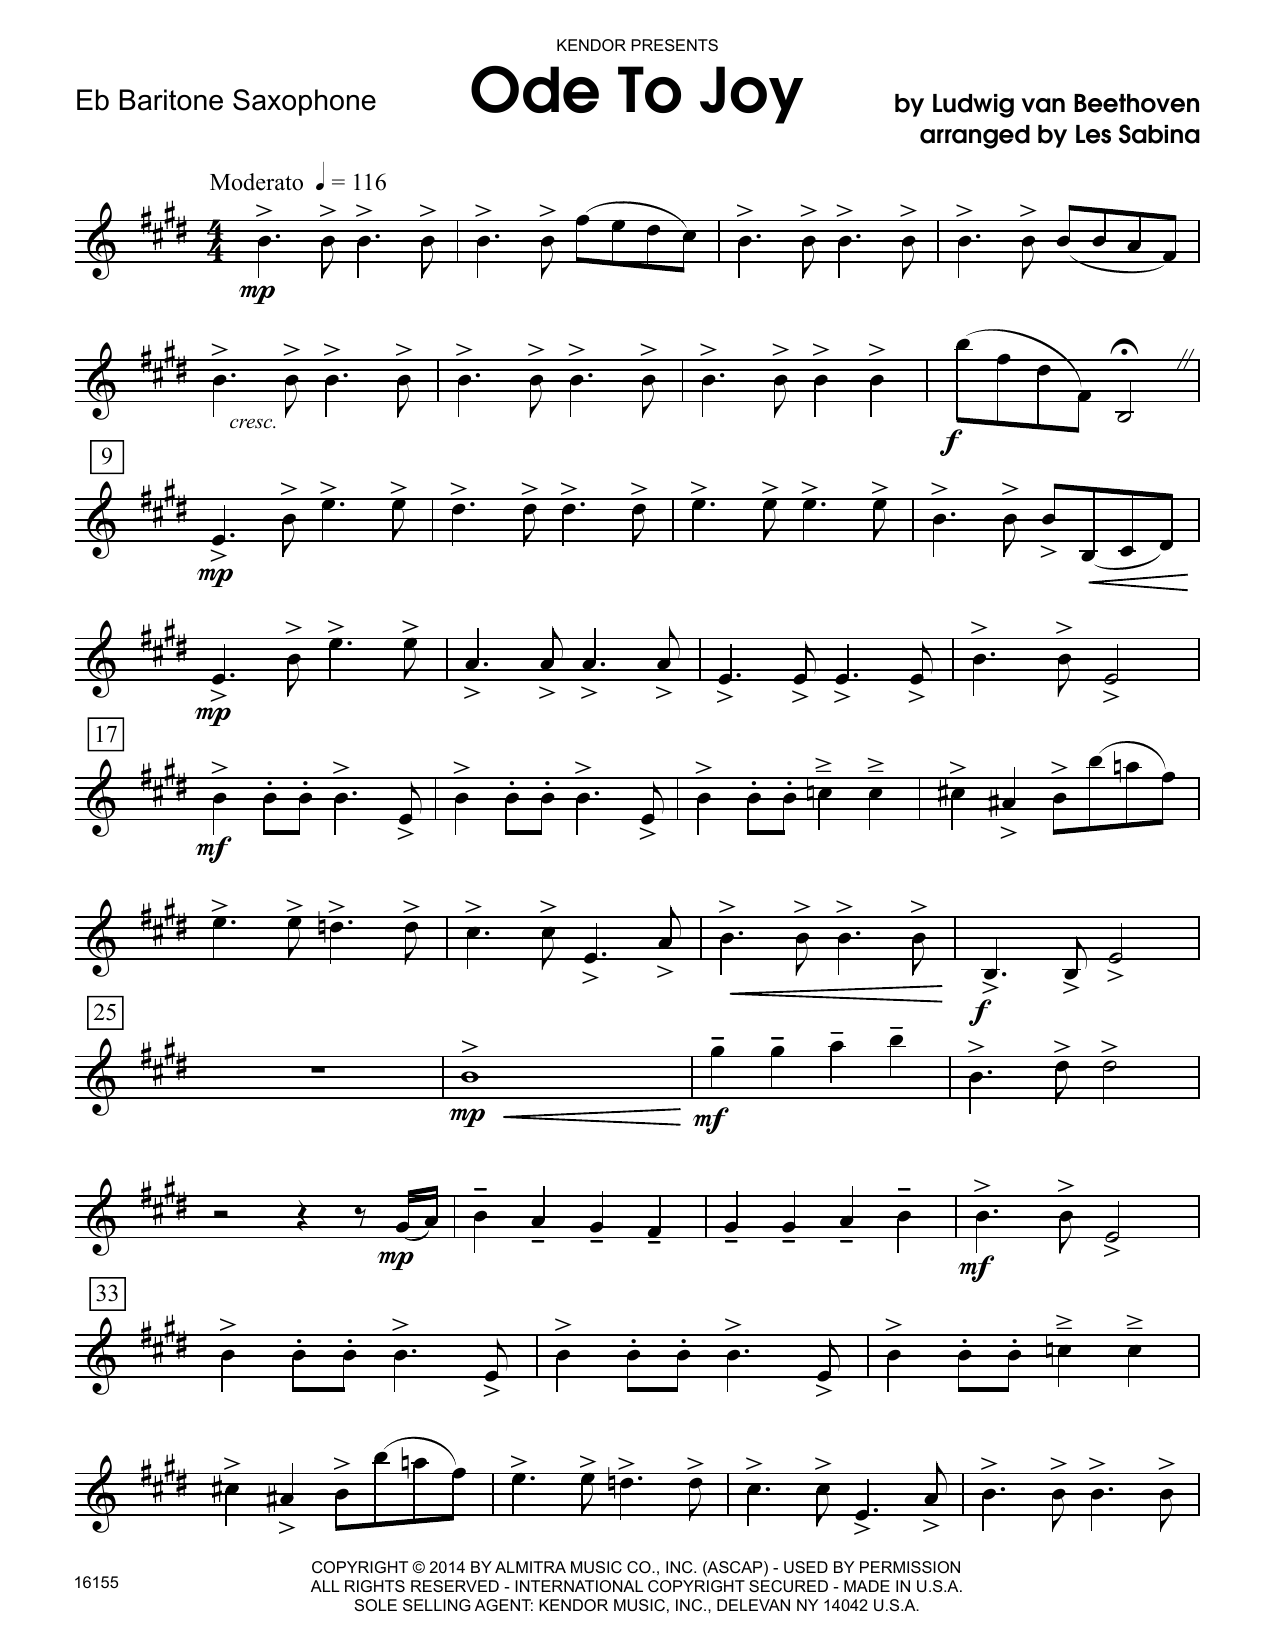 Download Les Sabina Ode To Joy - Eb Baritone Saxophone Sheet Music